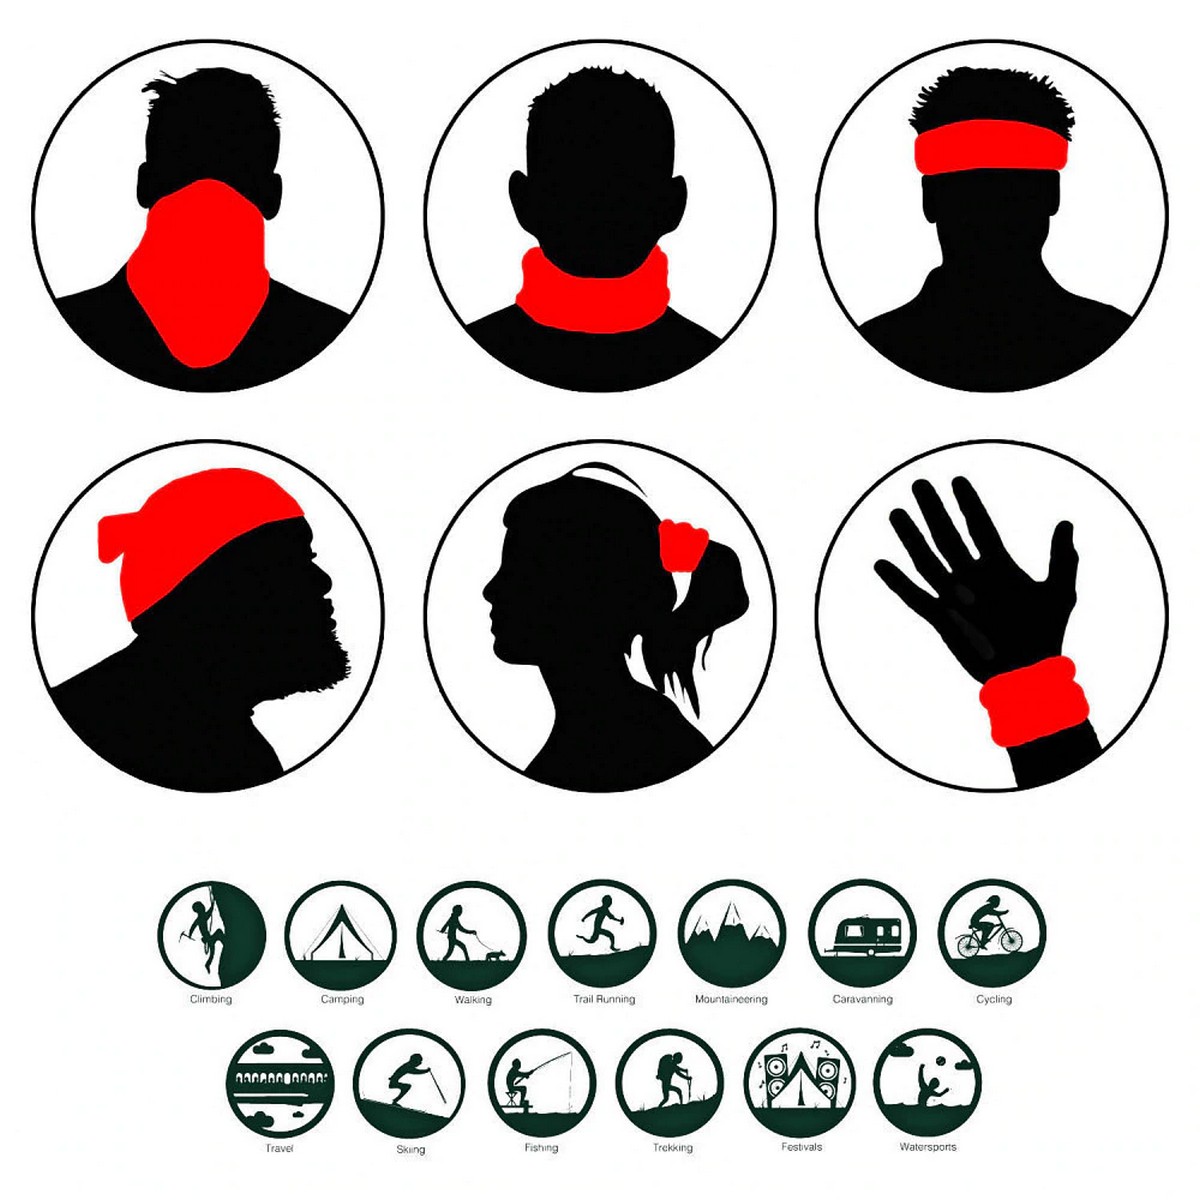 viso multifunzionale e sciarpa per la testa - l'uso